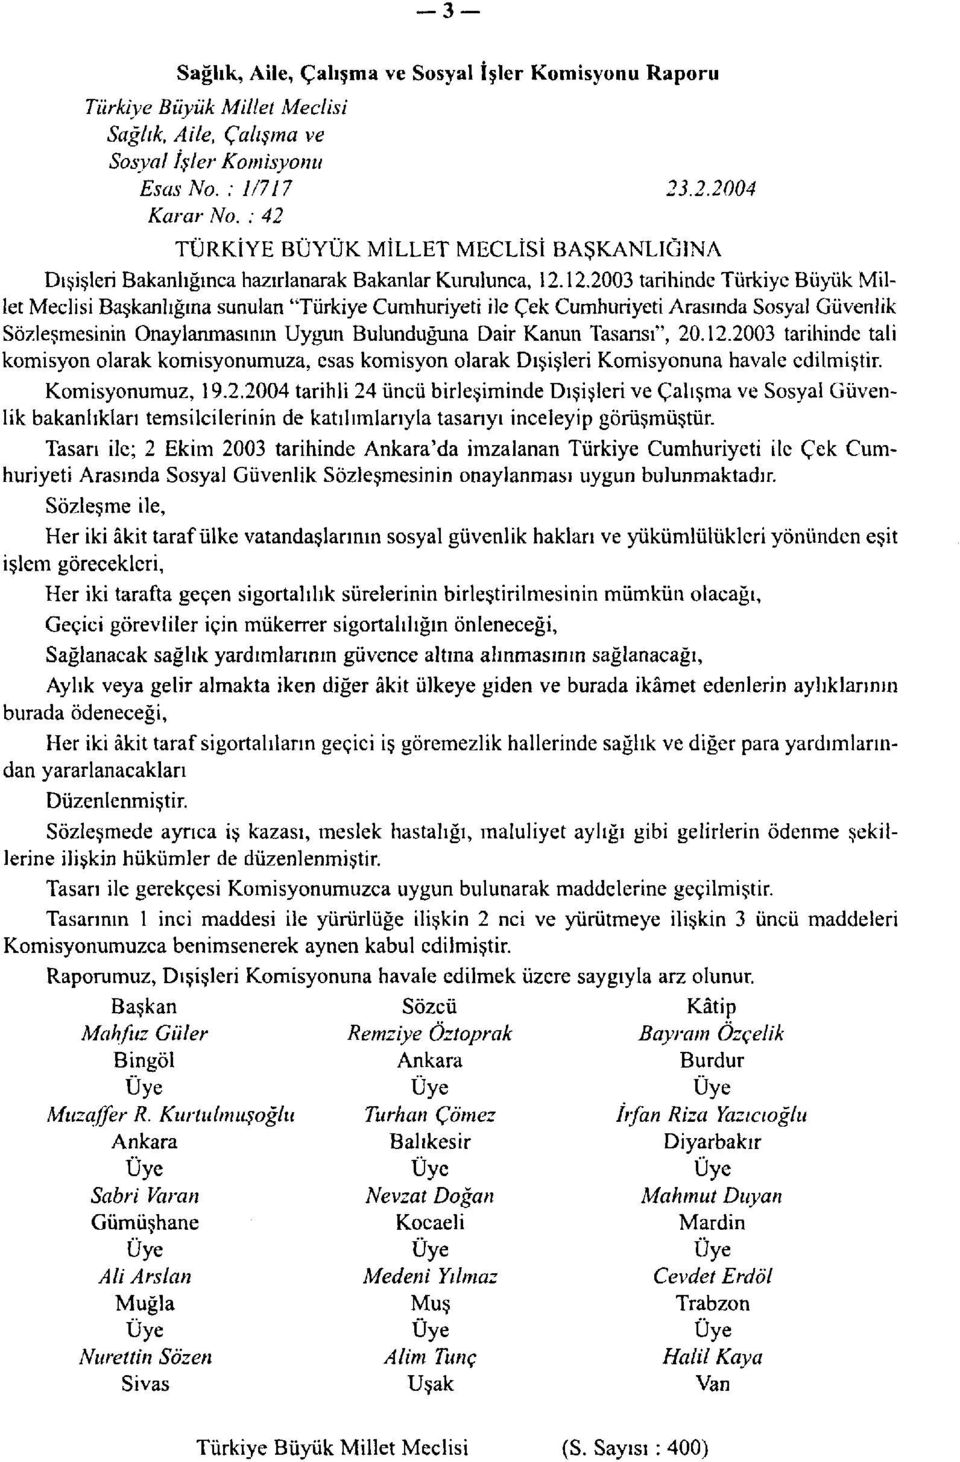 12.2003 tarihinde Türkiye Büyük Millet Meclisi Başkanlığına sunulan "Türkiye Cumhuriyeti ile Çek Cumhuriyeti Arasında Sosyal Güvenlik Sözleşmesinin Onaylanmasının Uygun Bulunduğuna Dair Kanun